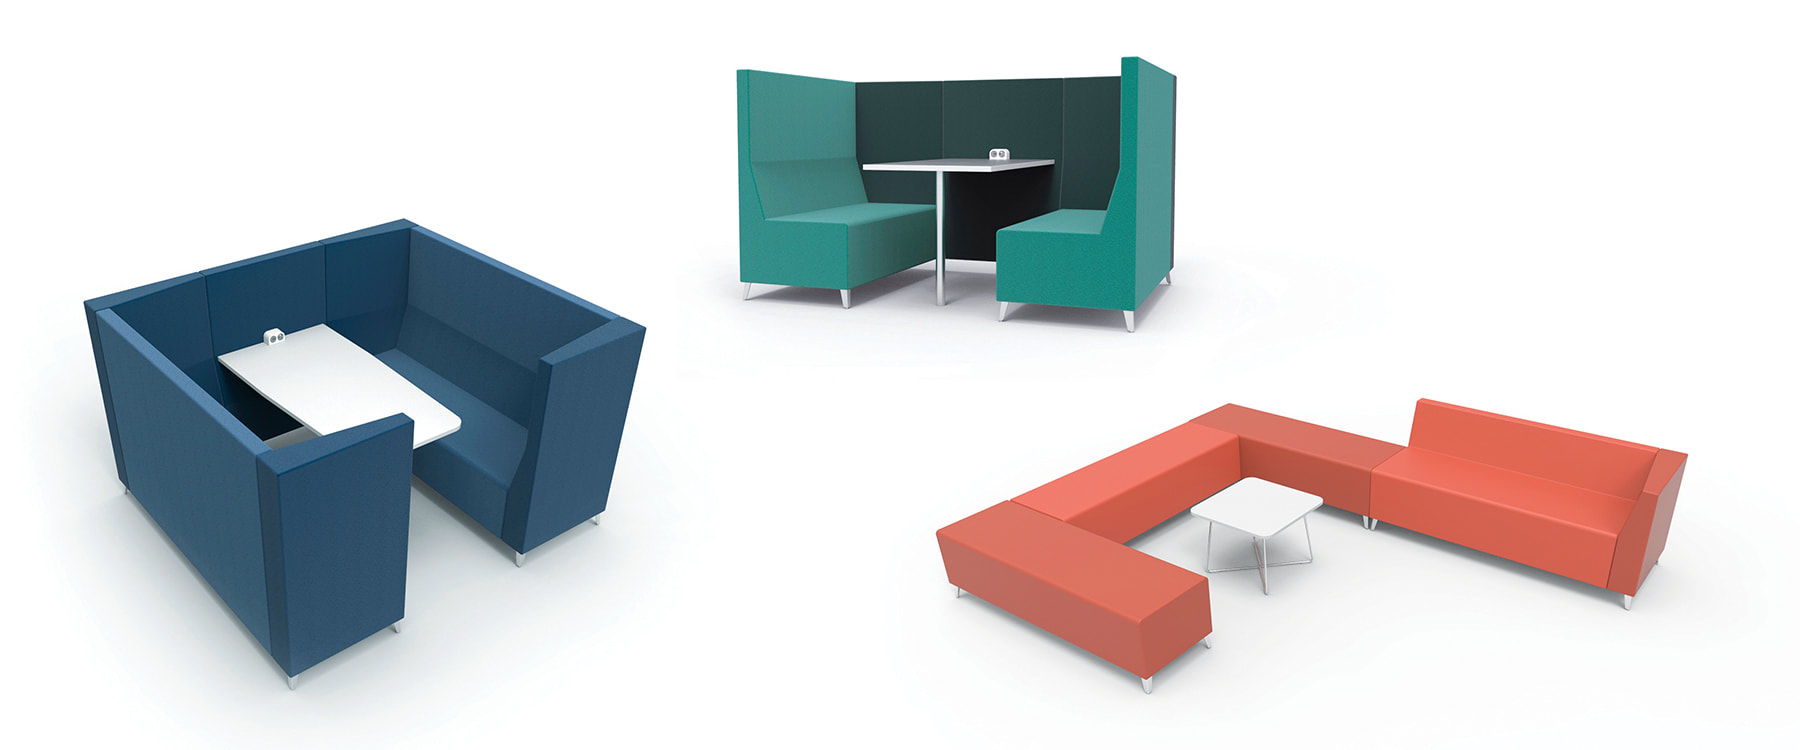 Julio, free-standing modular seating system designed by Jason Lansdale, furniture designer